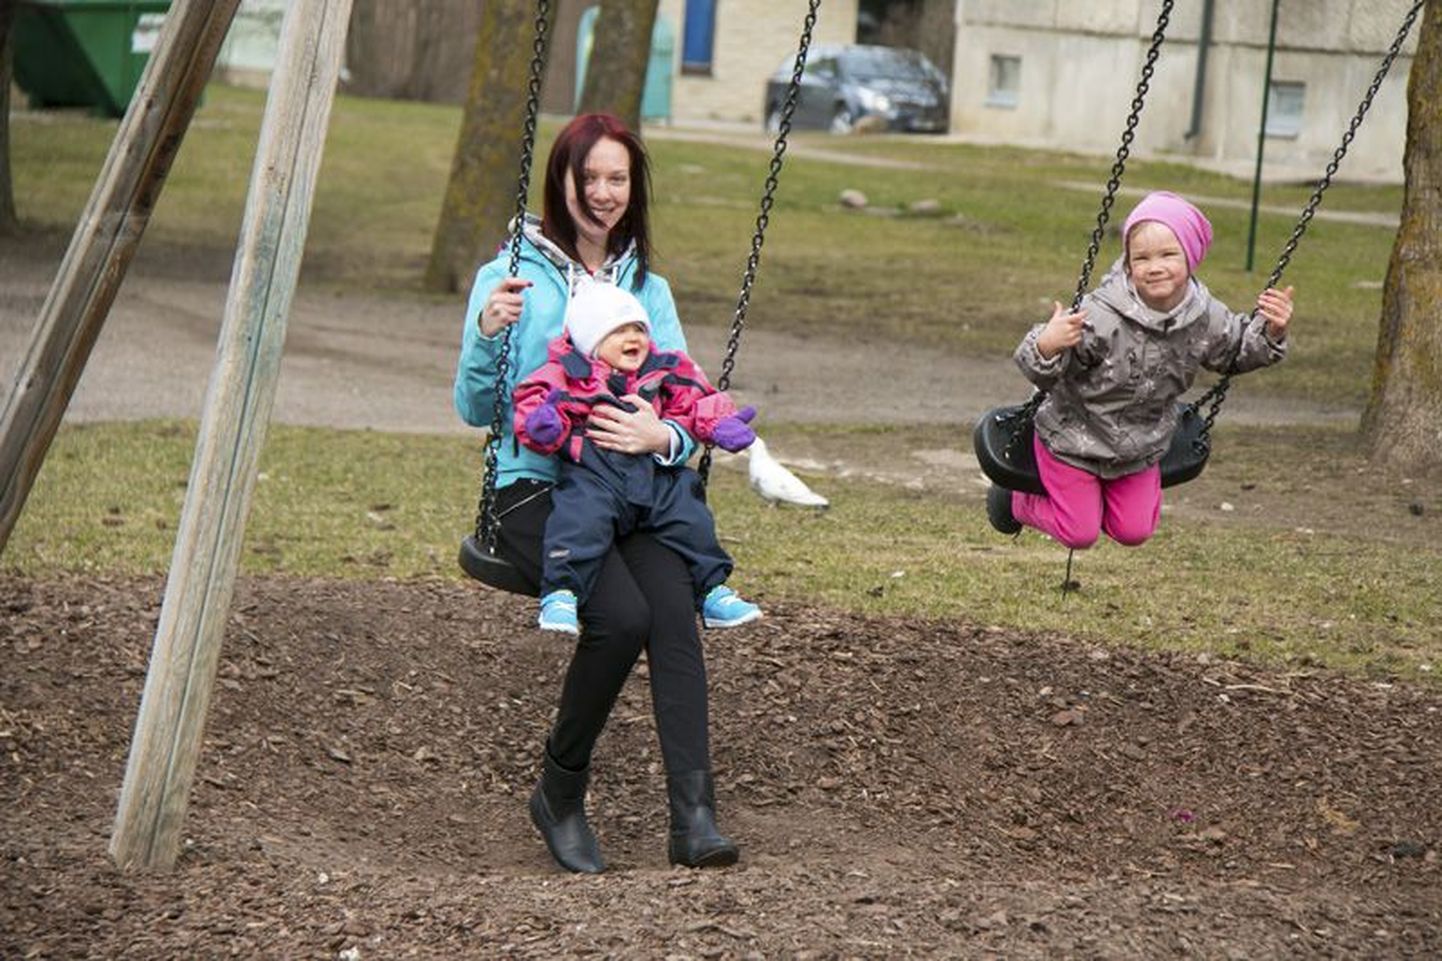 Ksenija võib nüüd rõõmu tunda, sest tema viieaastane tütar Larissa sai Eesti kodanikuks, rõõmu tunneb ka aastane Marta.